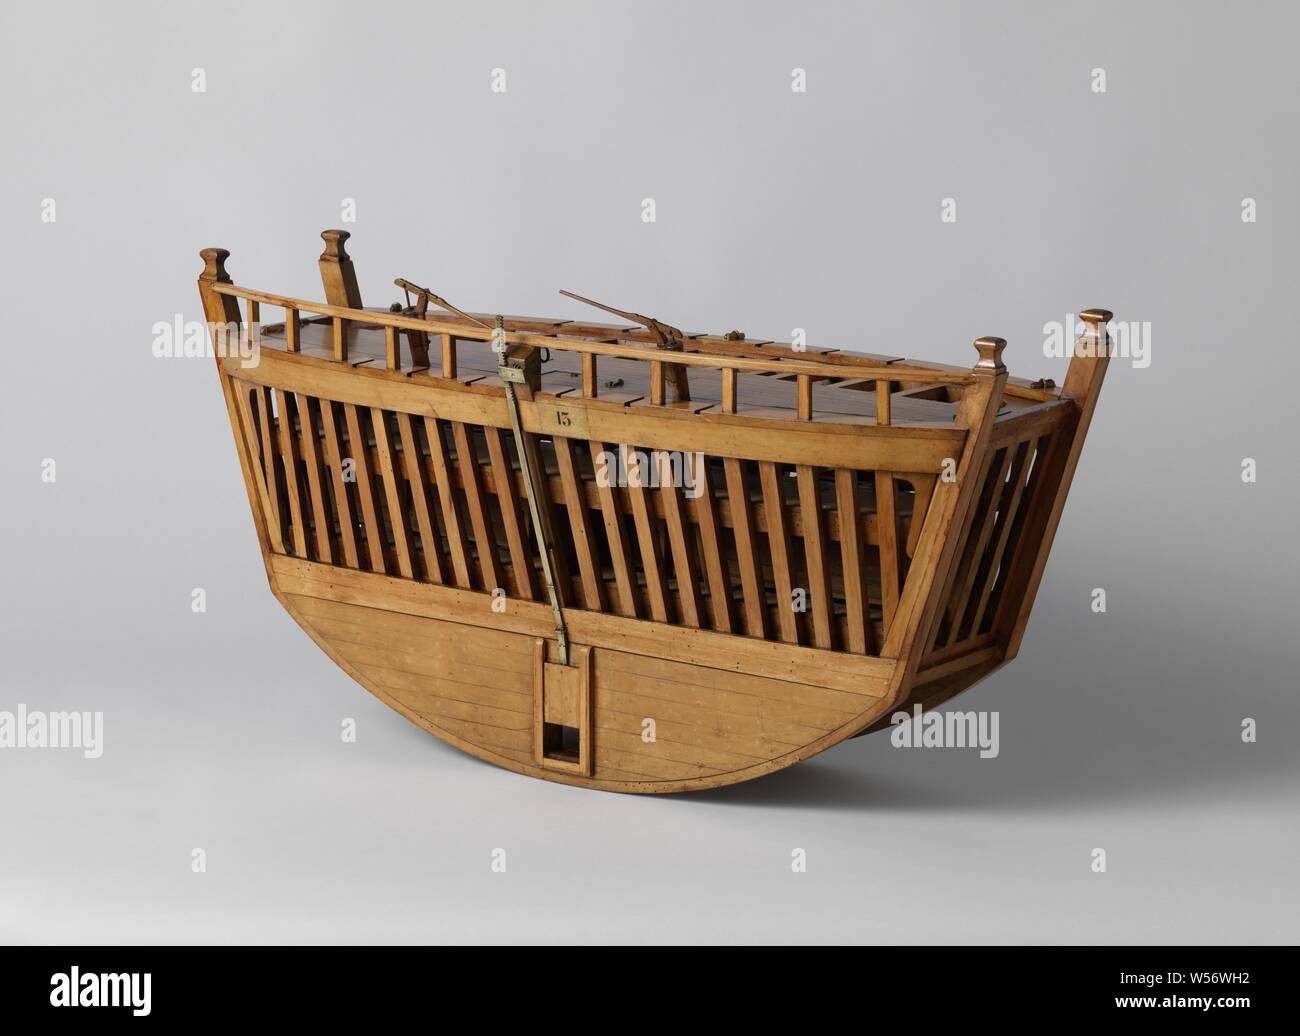 Modèle d'un caisson en bois, modèle d'une porte du navire avec une quille double  peau, omis. Deux niveaux, dont la moitié ont plancher, les parties du pont  supérieur peut être enlevé. Sur